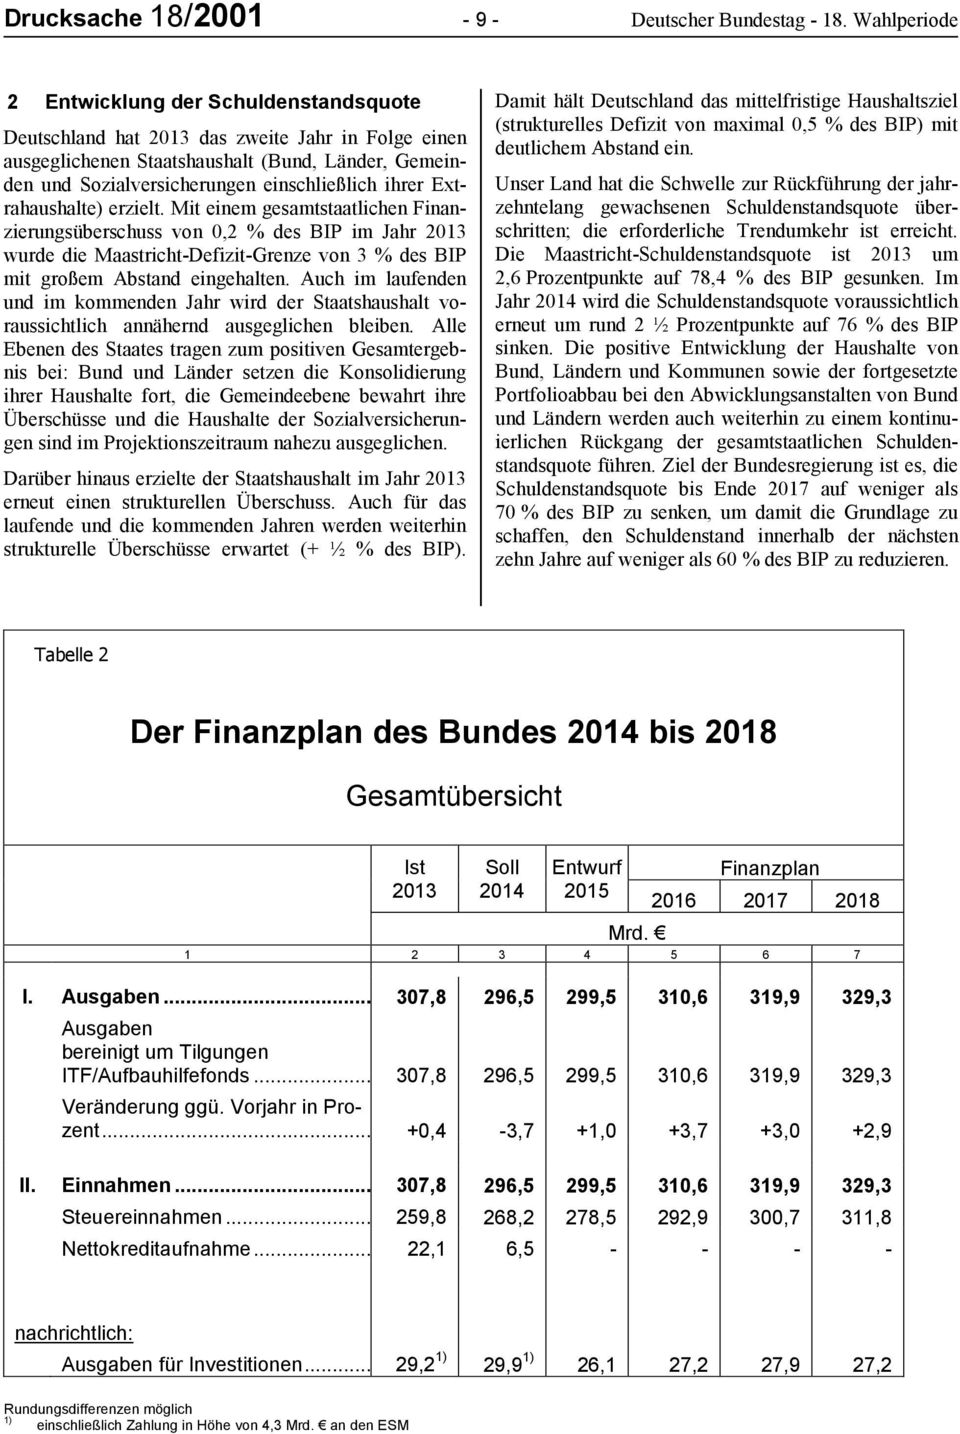 ihrer Extrahaushalte) erzielt. Mit einem gesamtstaatlichen Finanzierungsüberschuss von 0,2 % des BIP im Jahr 2013 wurde die Maastricht-Defizit-Grenze von 3 % des BIP mit großem Abstand eingehalten.